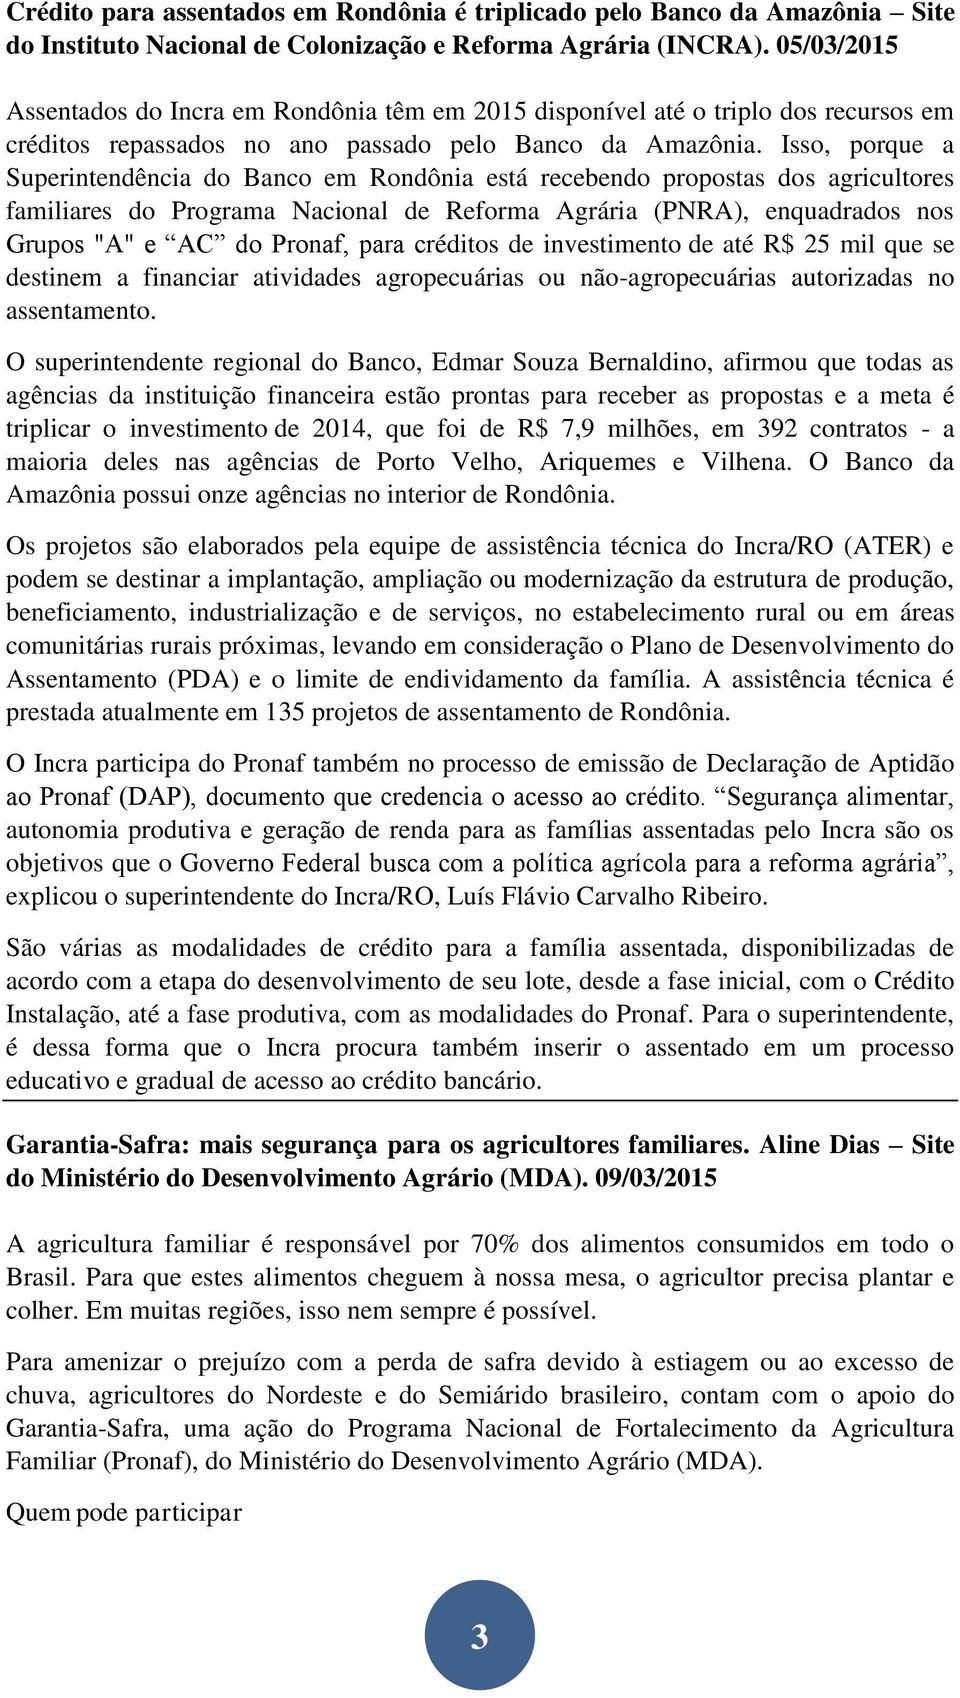 Isso, porque a Superintendência do Banco em Rondônia está recebendo propostas dos agricultores familiares do Programa Nacional de Reforma Agrária (PNRA), enquadrados nos Grupos "A" e AC do Pronaf,